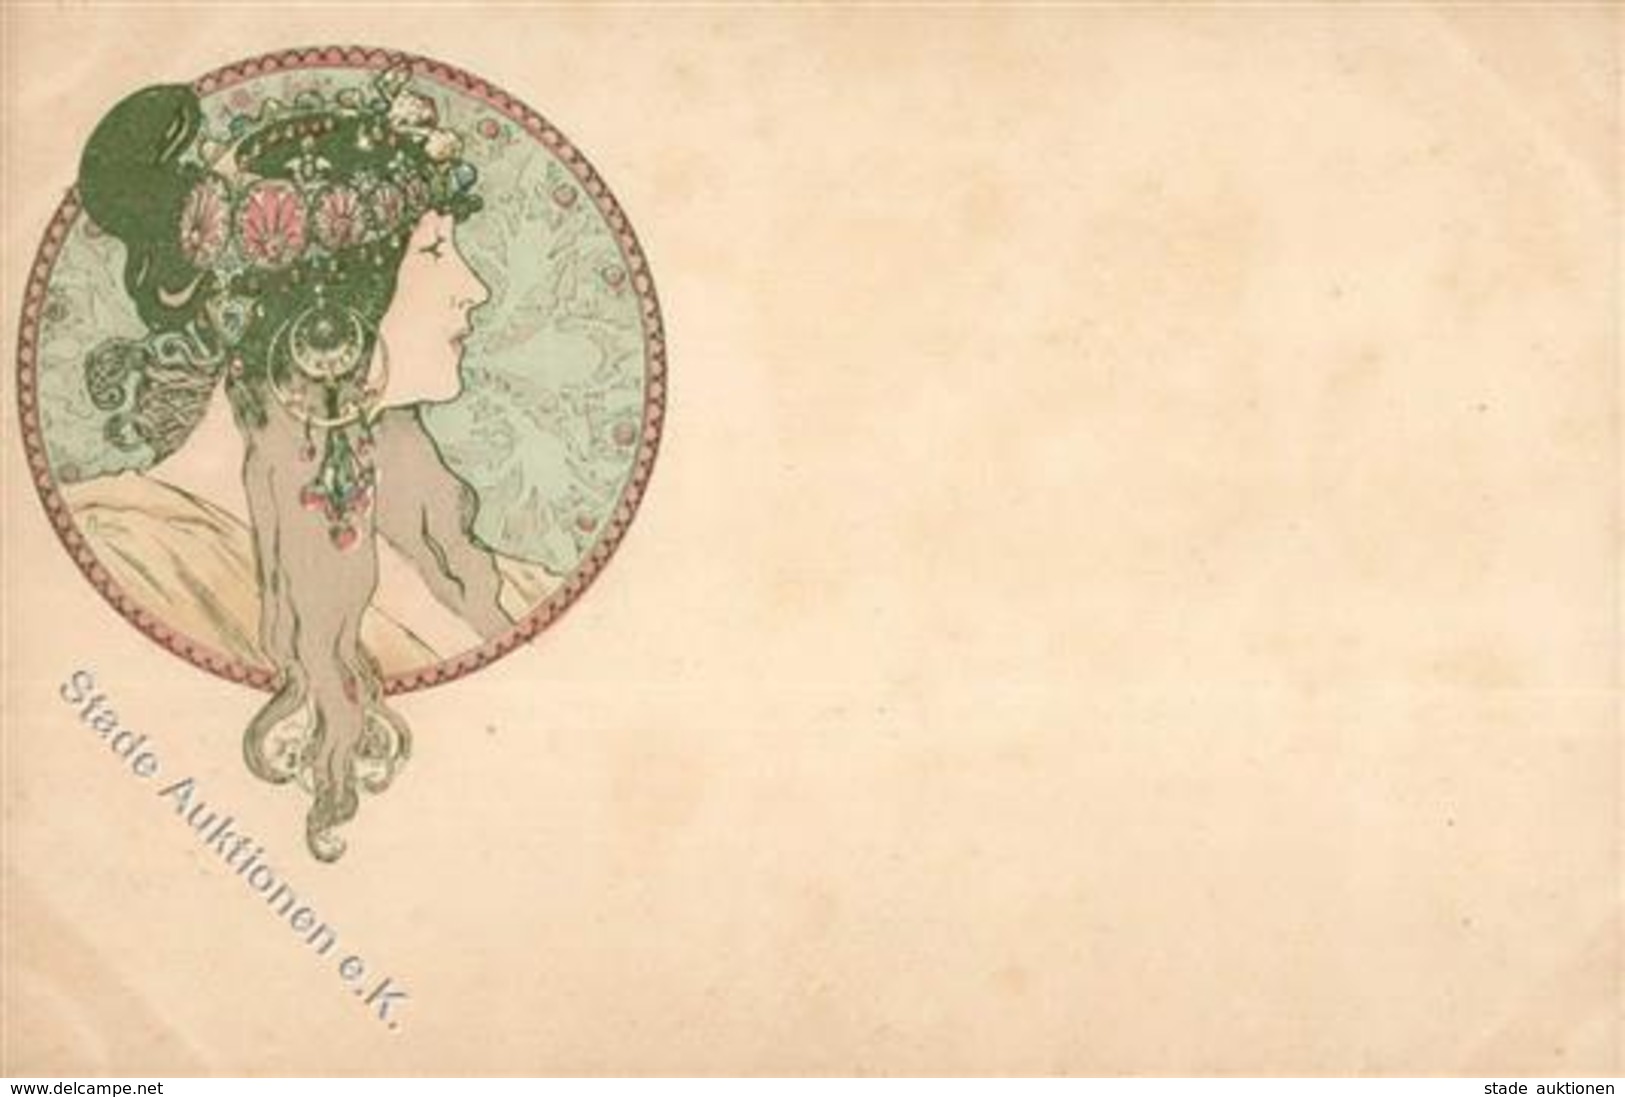 Mucha, Alfons Frau Jugendstil Künstler-Karte I-II (fleckig) Art Nouveau - Zonder Classificatie